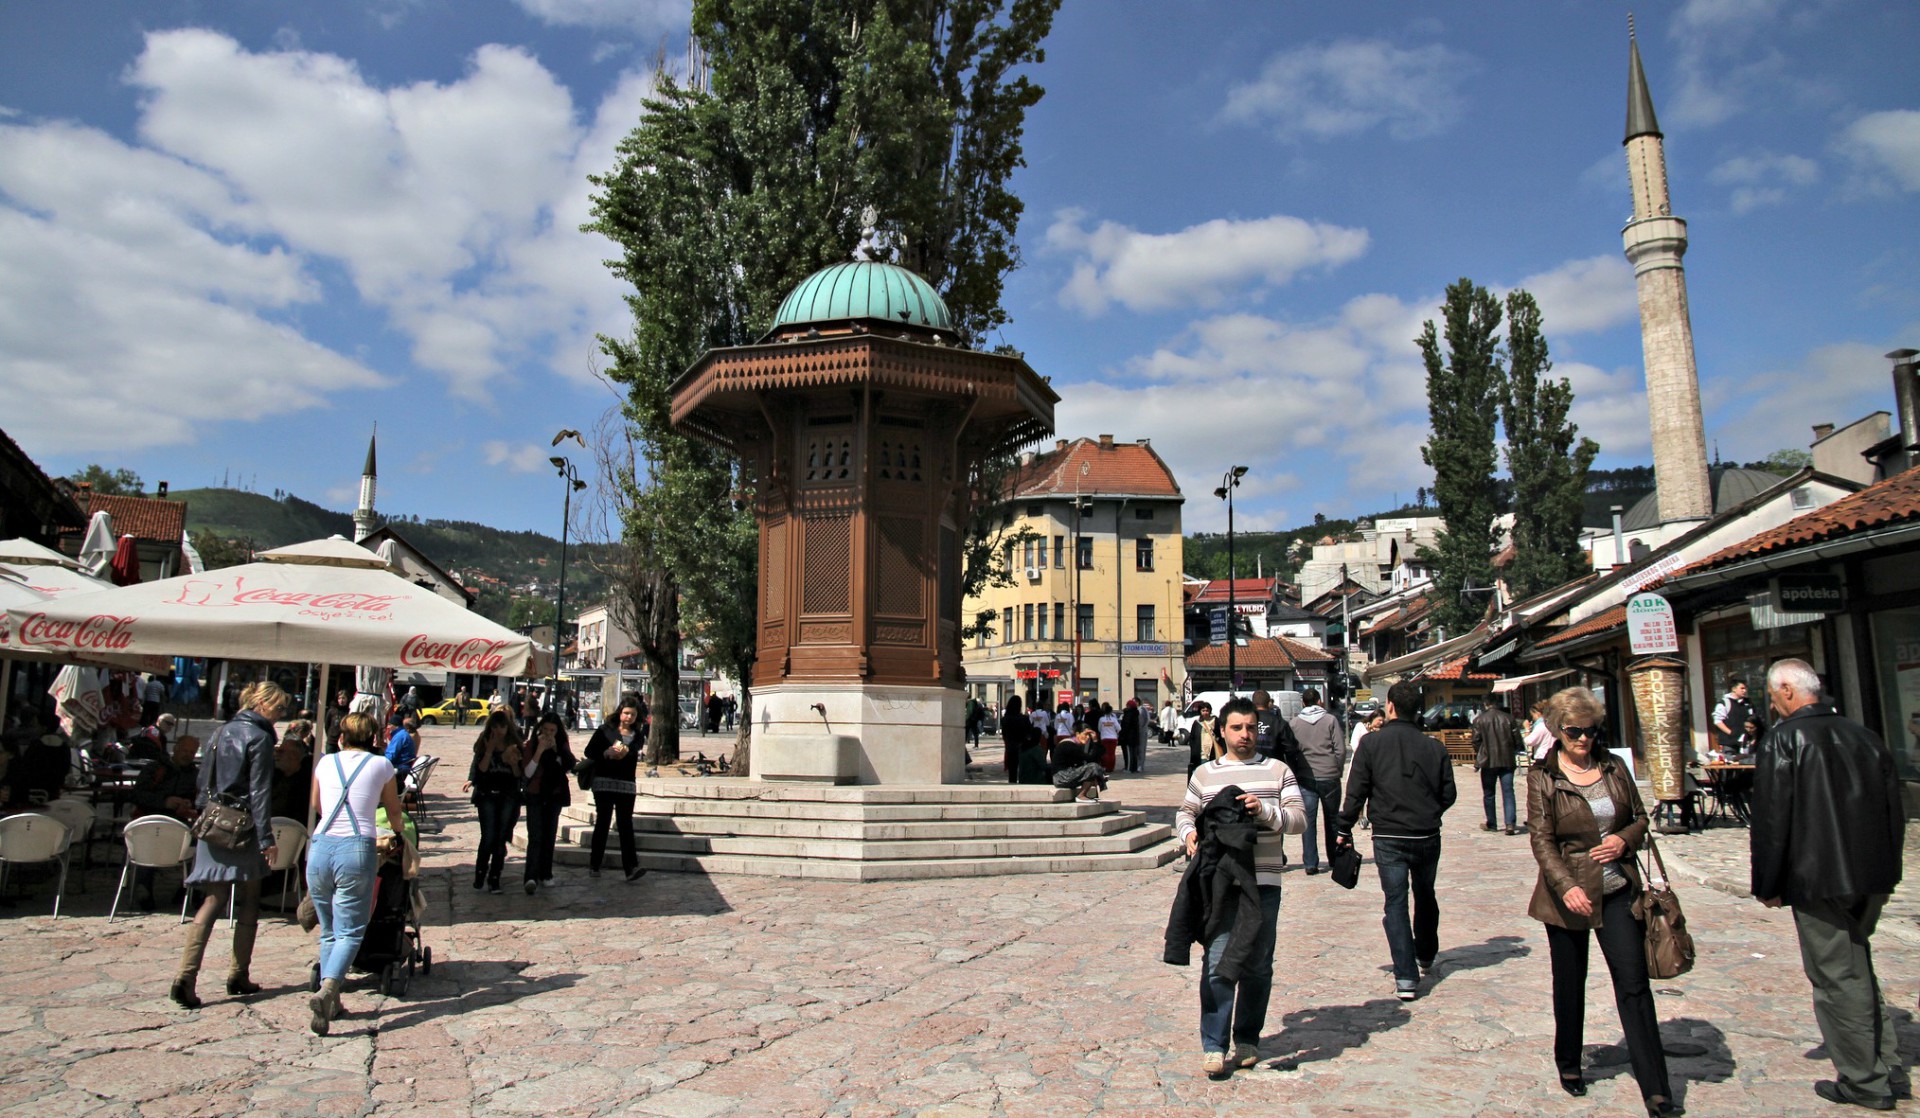 La population de Bosnie-Herzégovine est très diversifiée (Photo: Andreas Lehner/Flickr/CC BY 2.0)